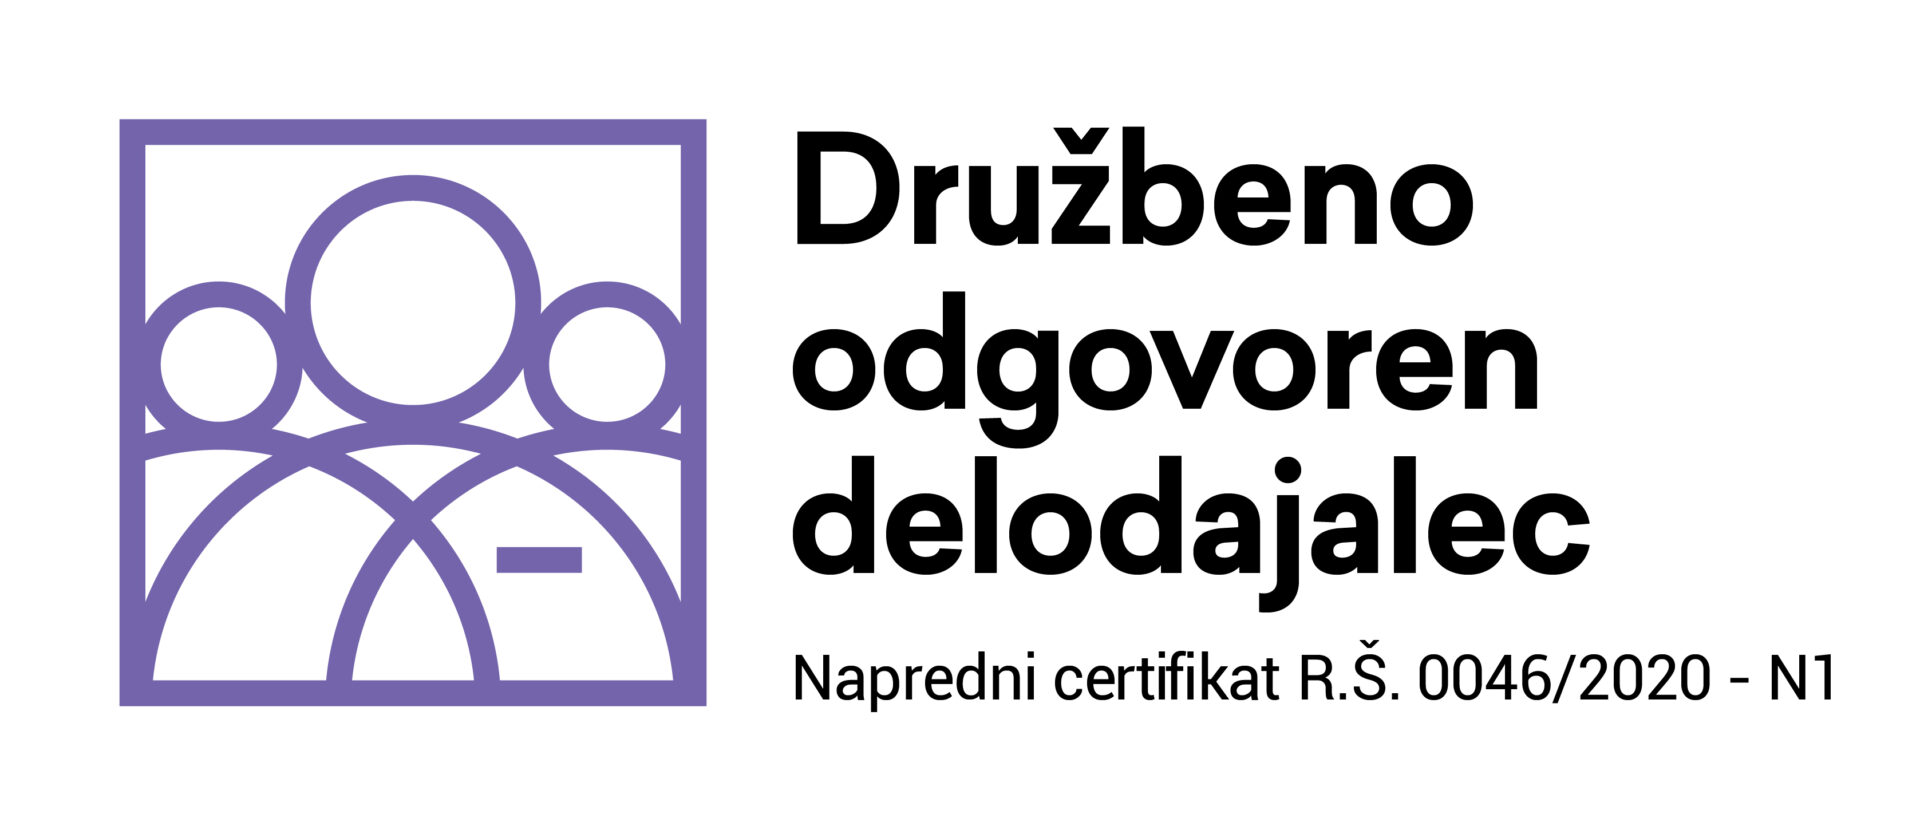 DOD-napredni-certifikat_logo_rgb-0064-2020 – N1-05